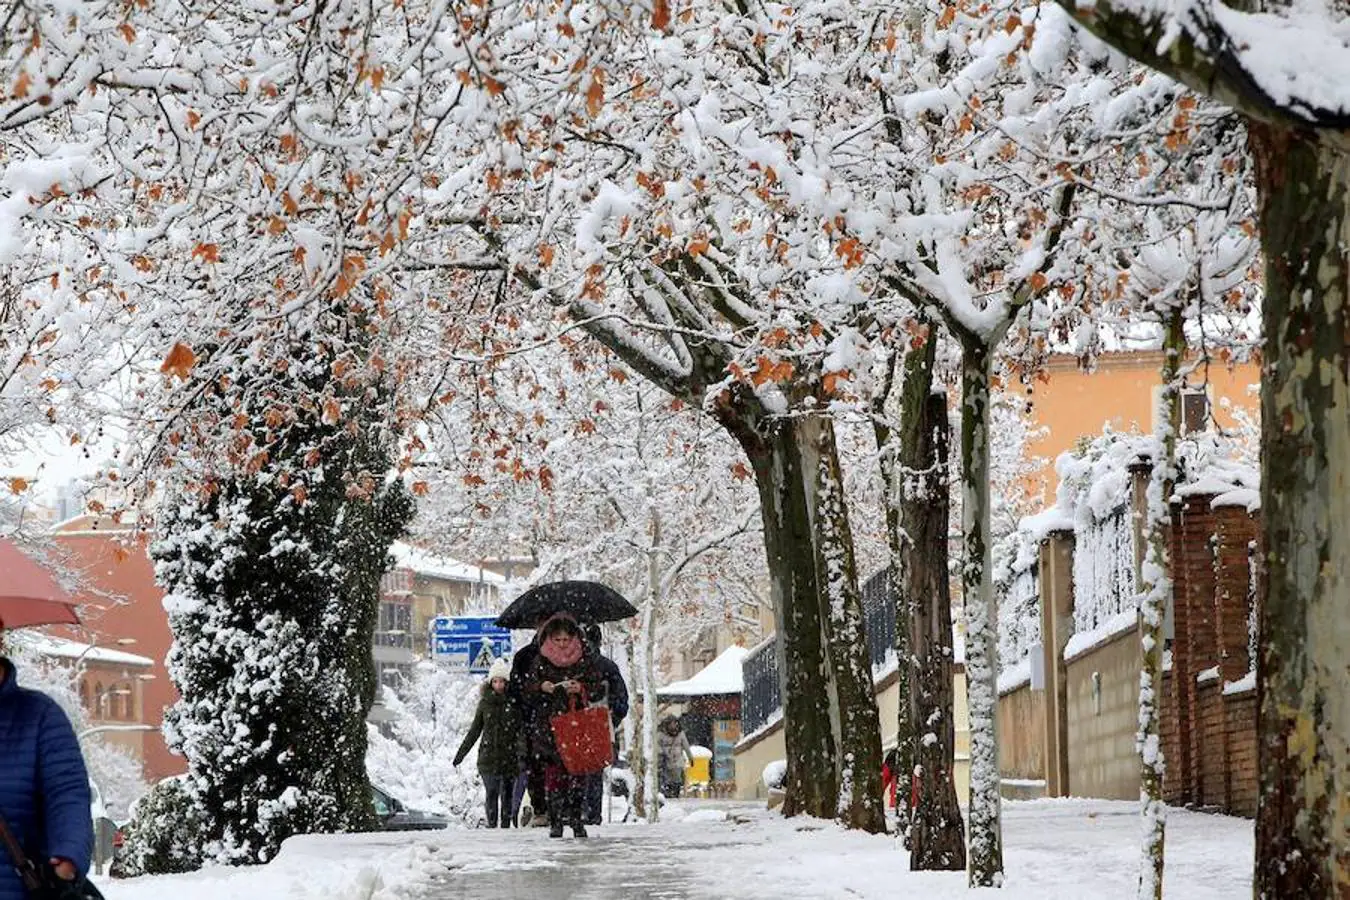 Frío y nieve en la ciudad de Teruel, donde la Agencia Estatal de Meteorología (Aemet) mantiene activada la alerta amarilla por nevadas en Albarracín y Jiloca, Gúdar y Maestrazgo, por nevadas de hasta 10 centímetros de espesor, en cotas de 400-600 metros, y de 4 centímetros en el Bajo Aragón, en altitudes a partir de 600-800 metros.